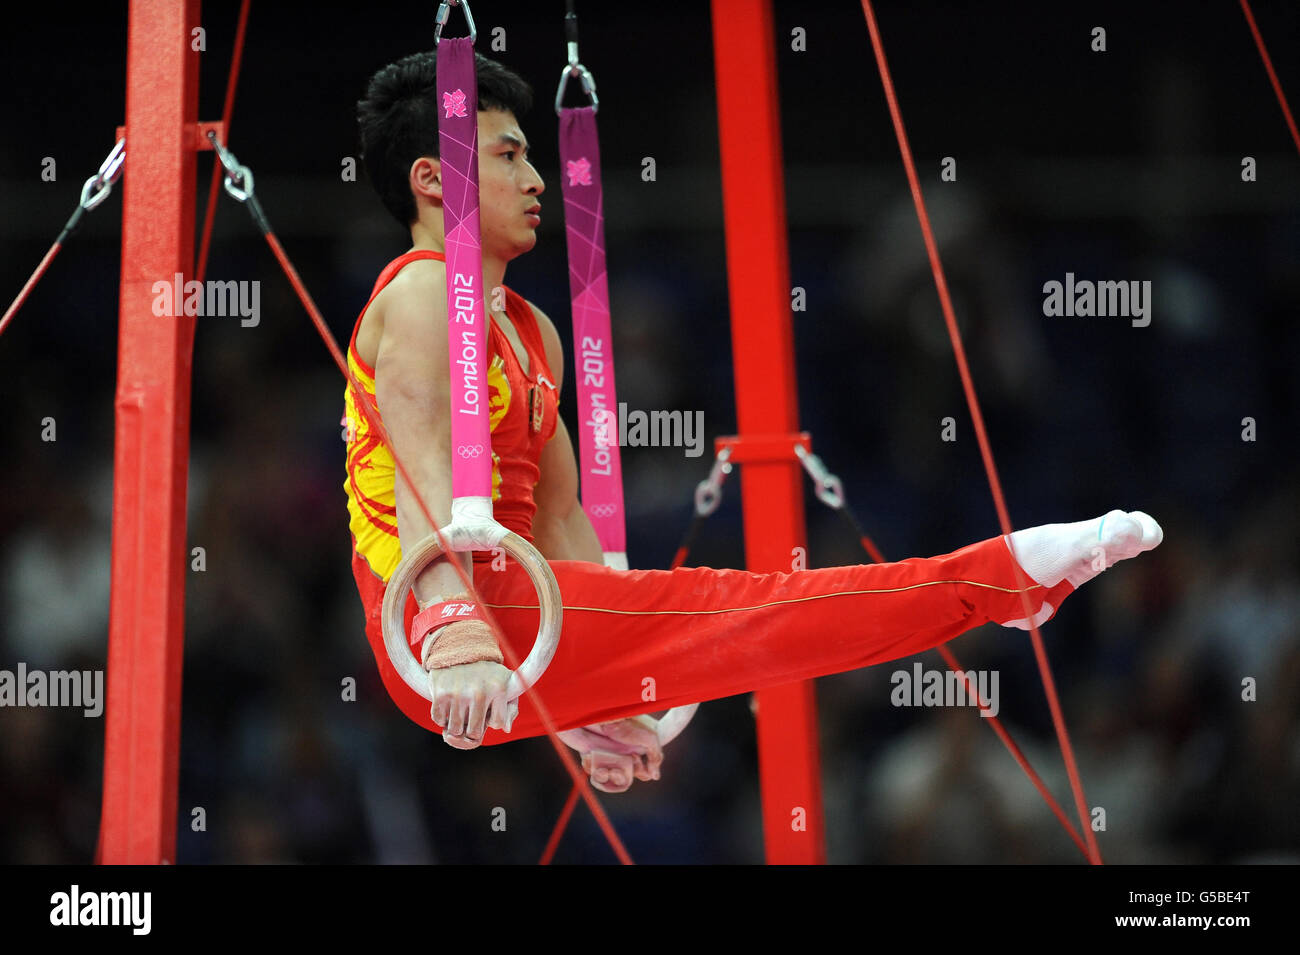 Olympische Spiele In London - Tag 1. Die chinesische Zhe Feng tritt während der Qualifikation des Teams für künstlerische Gymnastik in der North Greenwich Arena, London, an den Ringen an. Stockfoto